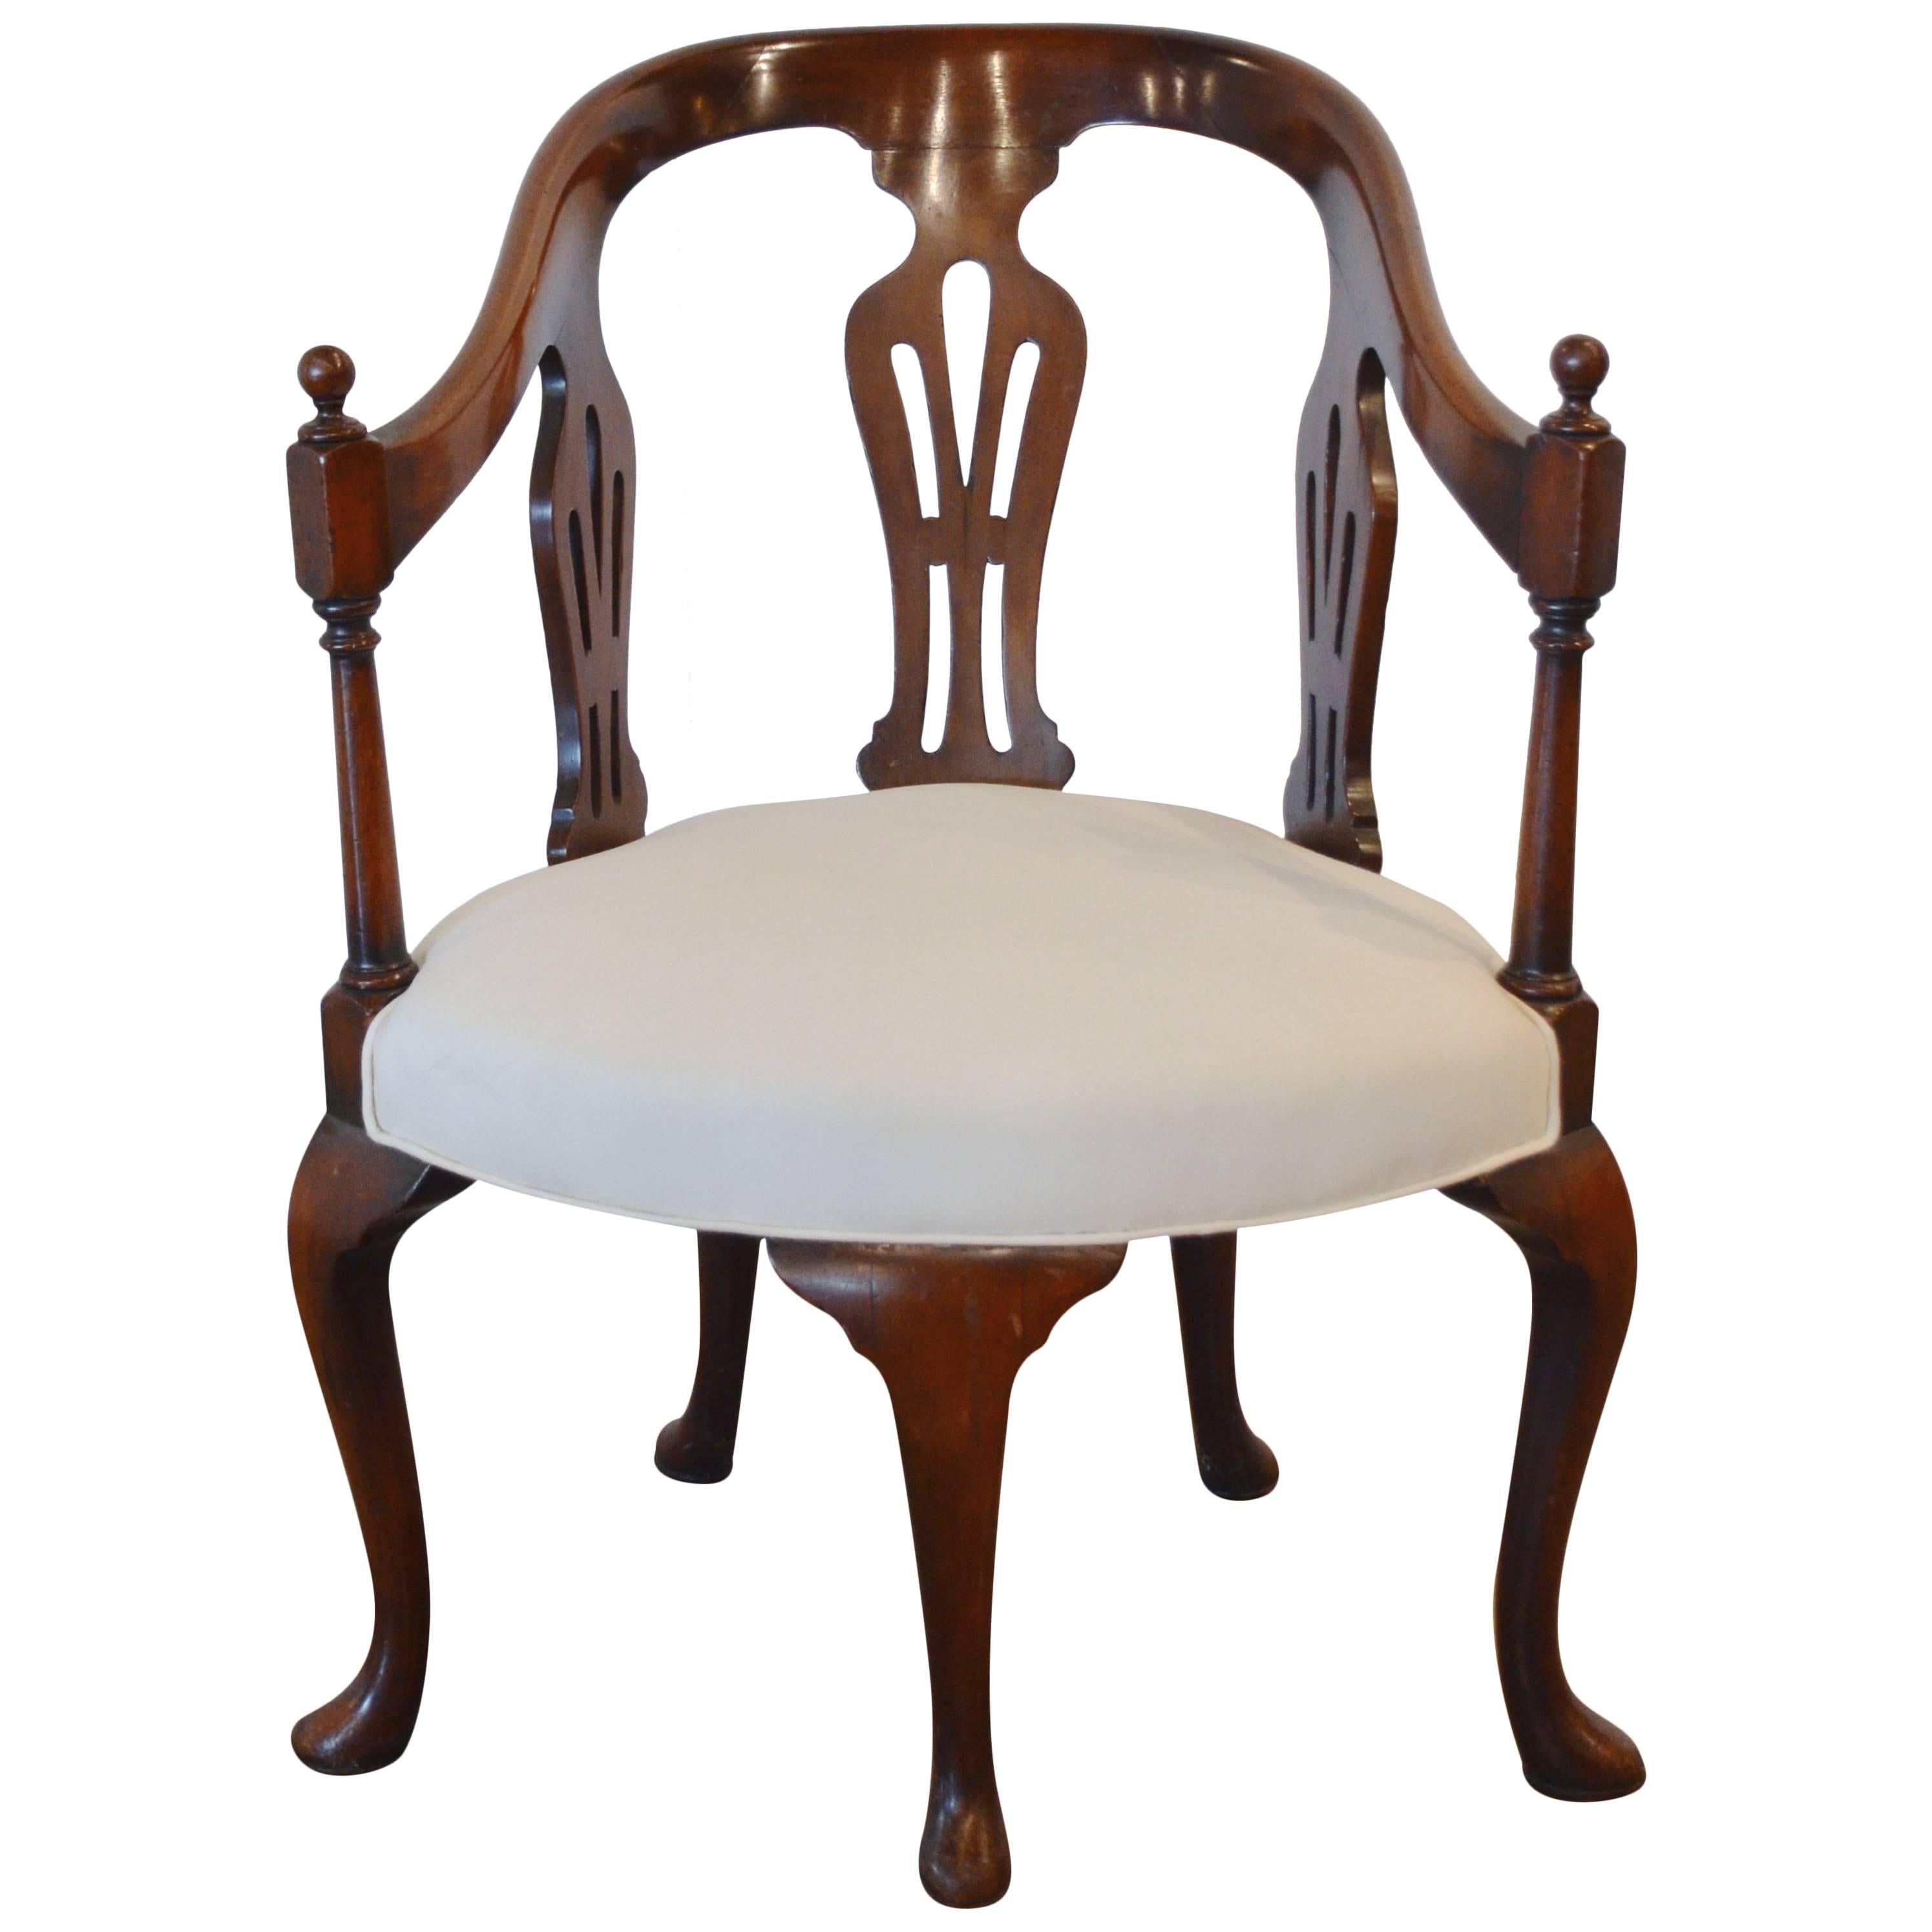 Queen Anne Five-Legged Chair, 18th Century